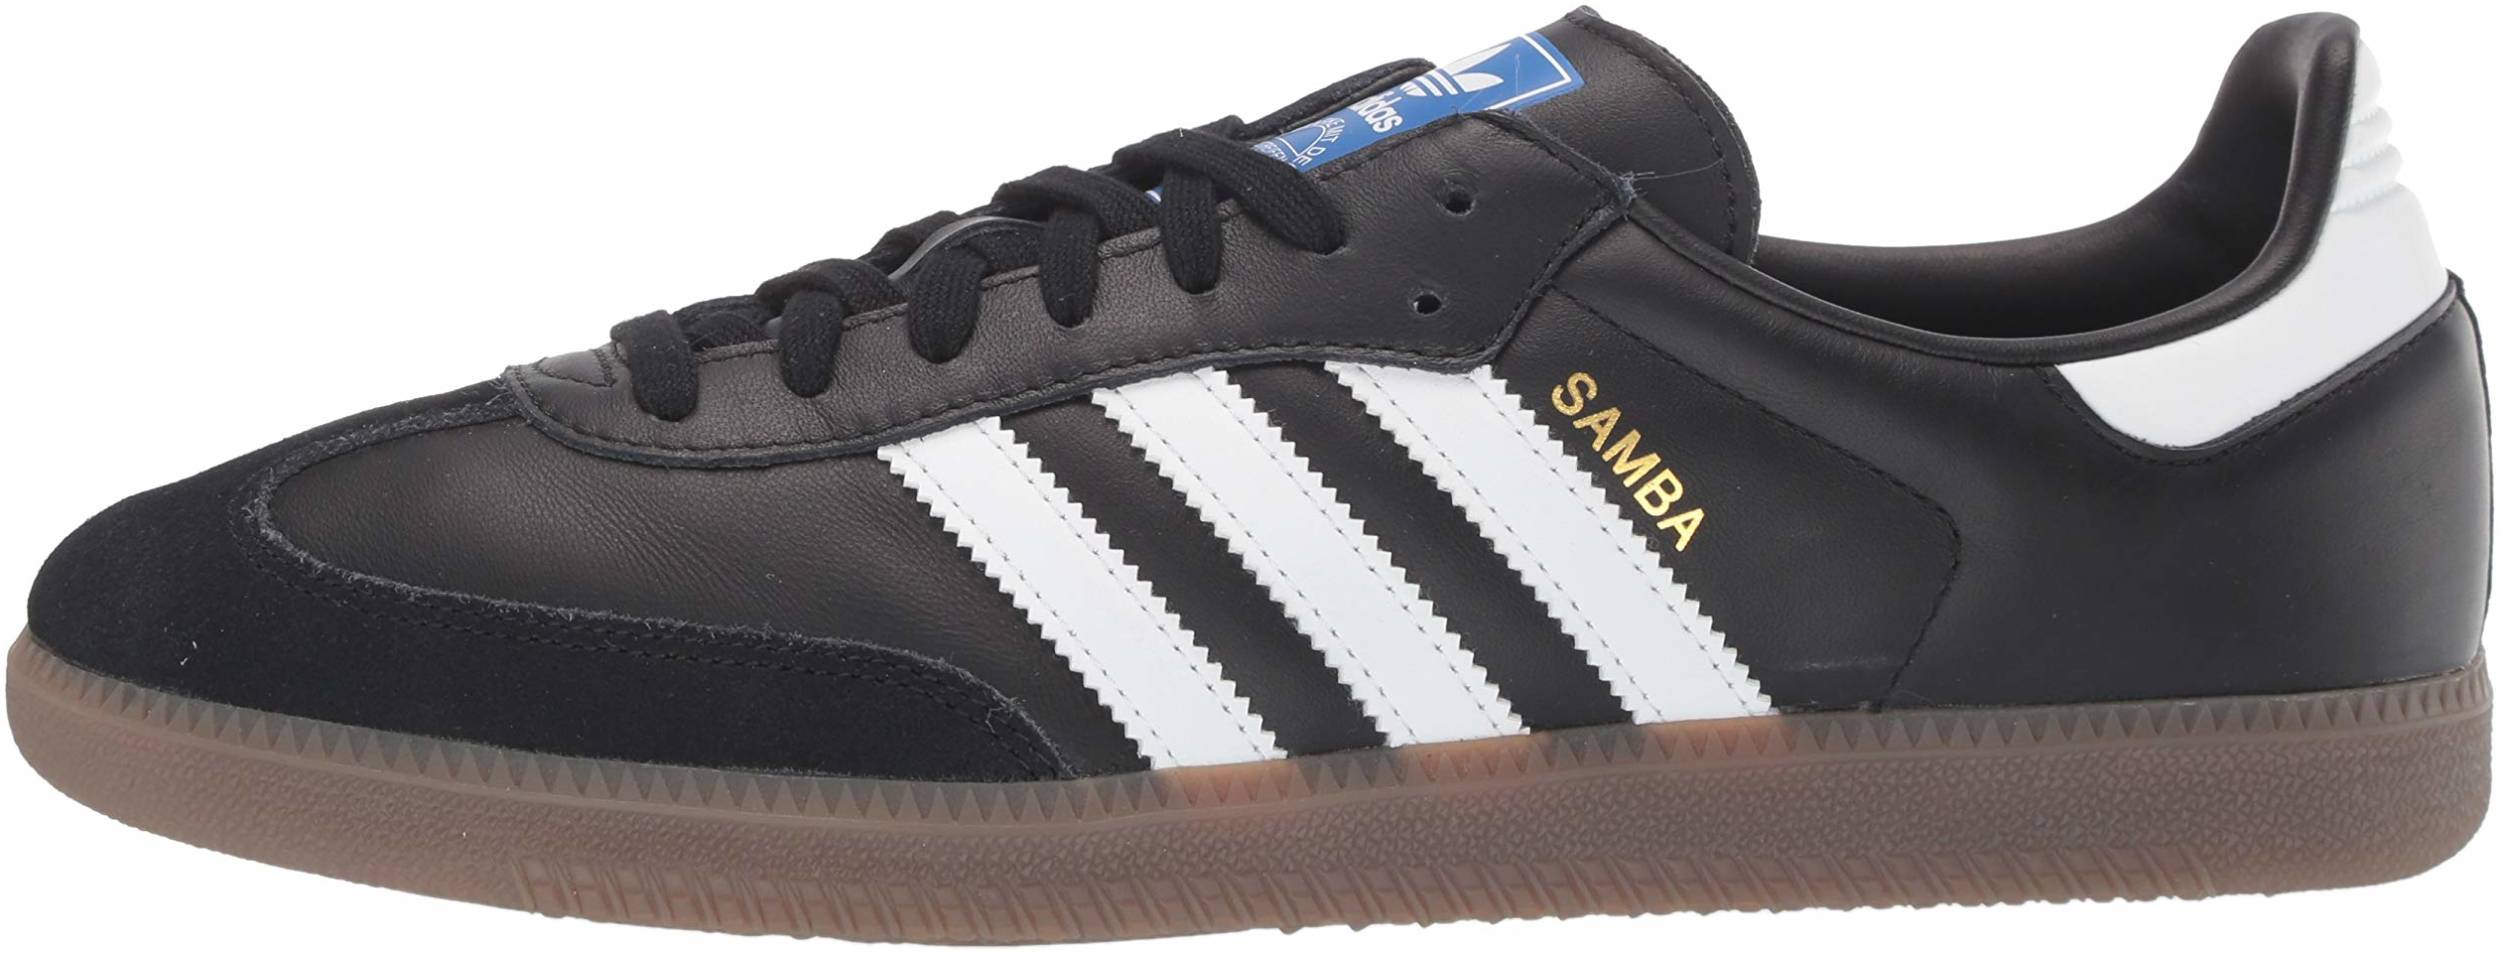 Save 50% on Adidas Samba Sneakers (14 